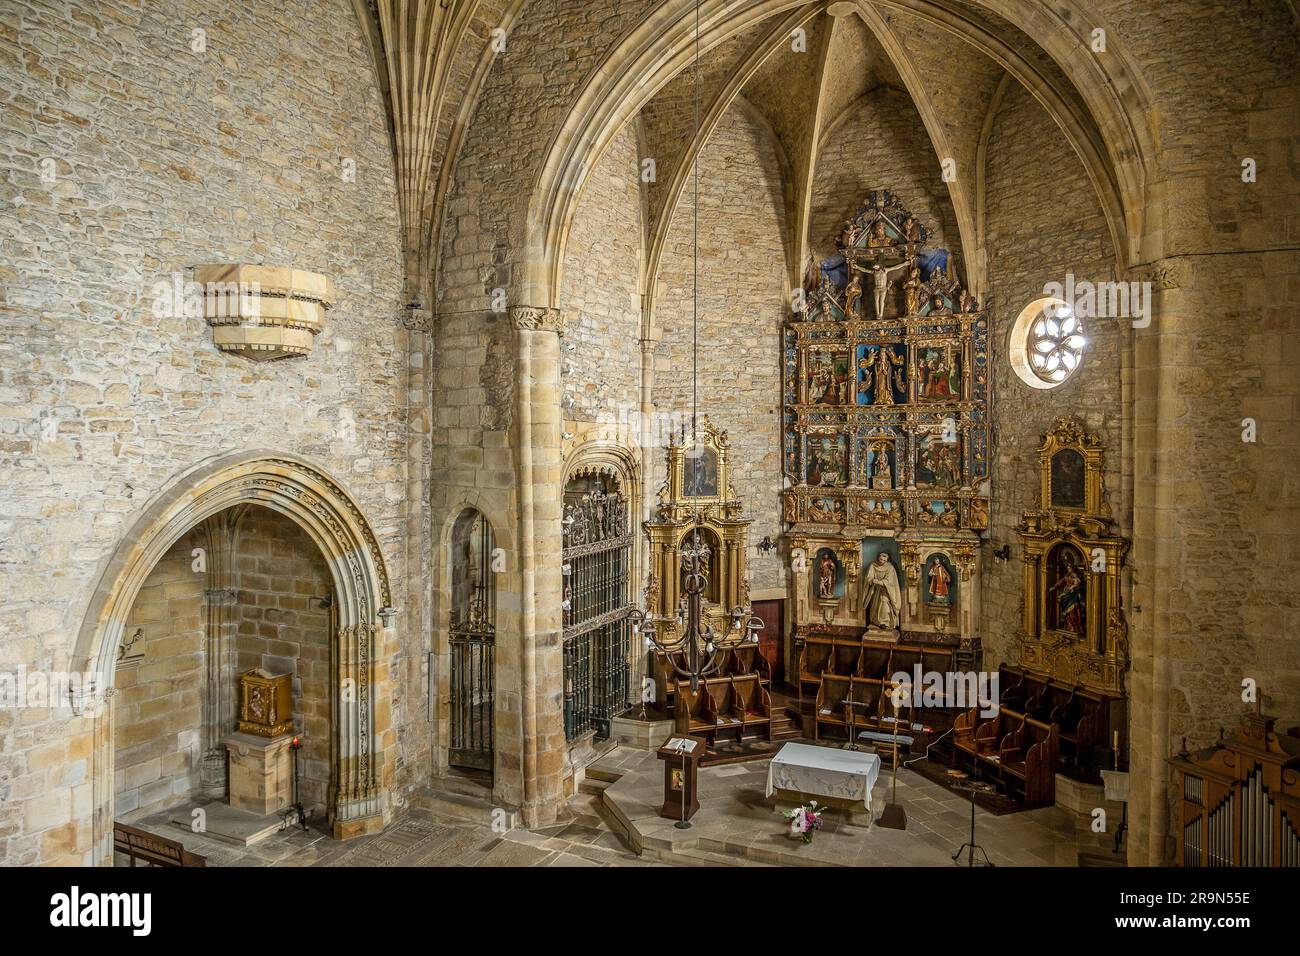 Monastero di Zenarruza sul Camino del Norte, percorso di pellegrinaggio spagnolo a Santiago de Compostela, Ziortza-Bolibar, Paesi Baschi, Spagna Foto Stock